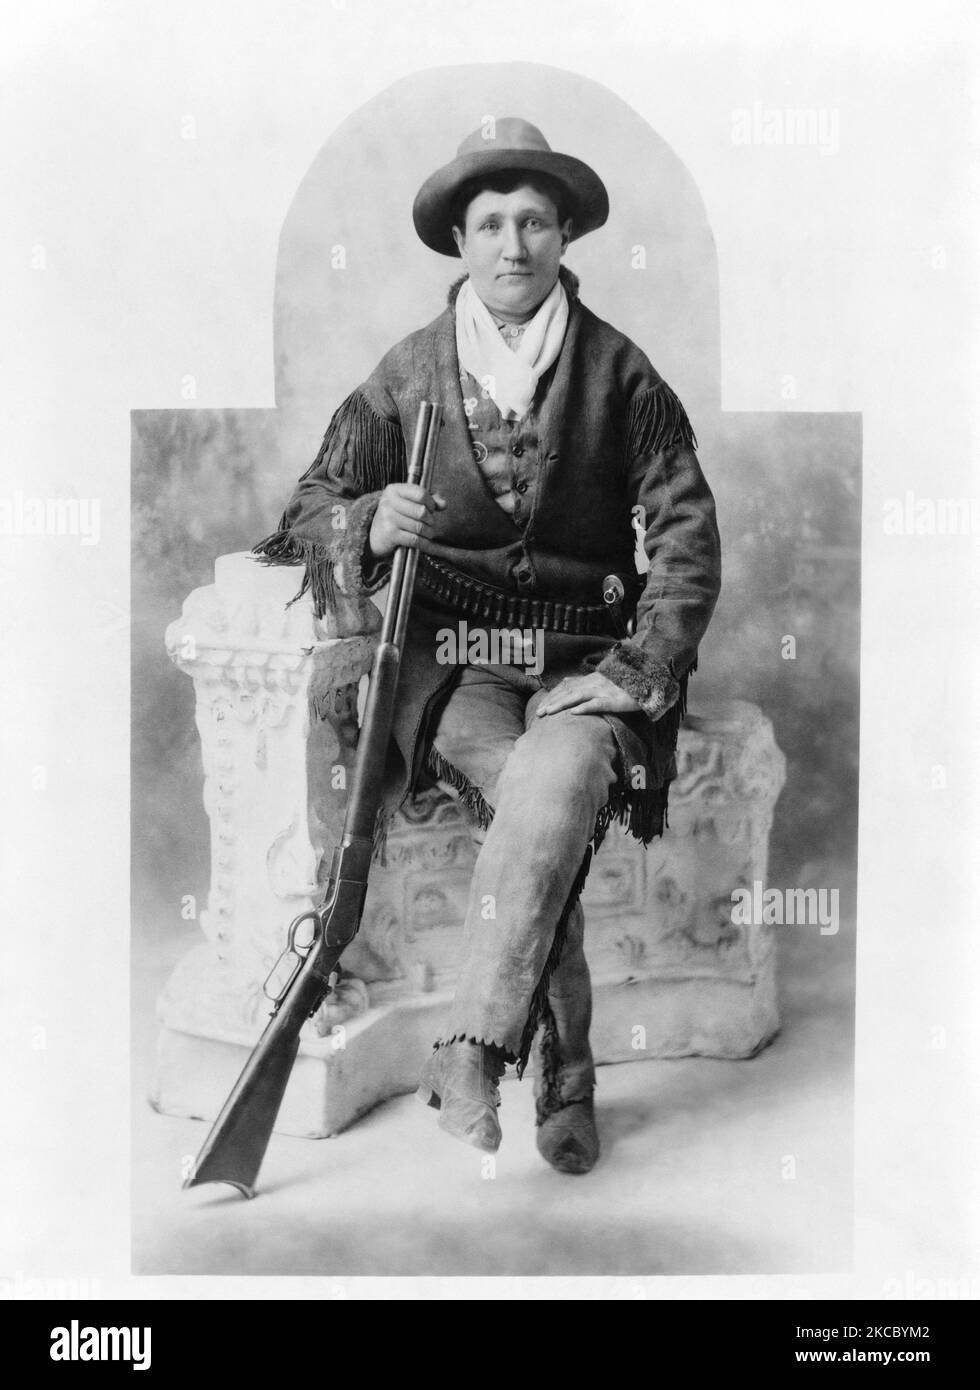 Martha Canary, populairement connue sous le nom de calamity Jane, assise avec son fusil. Banque D'Images